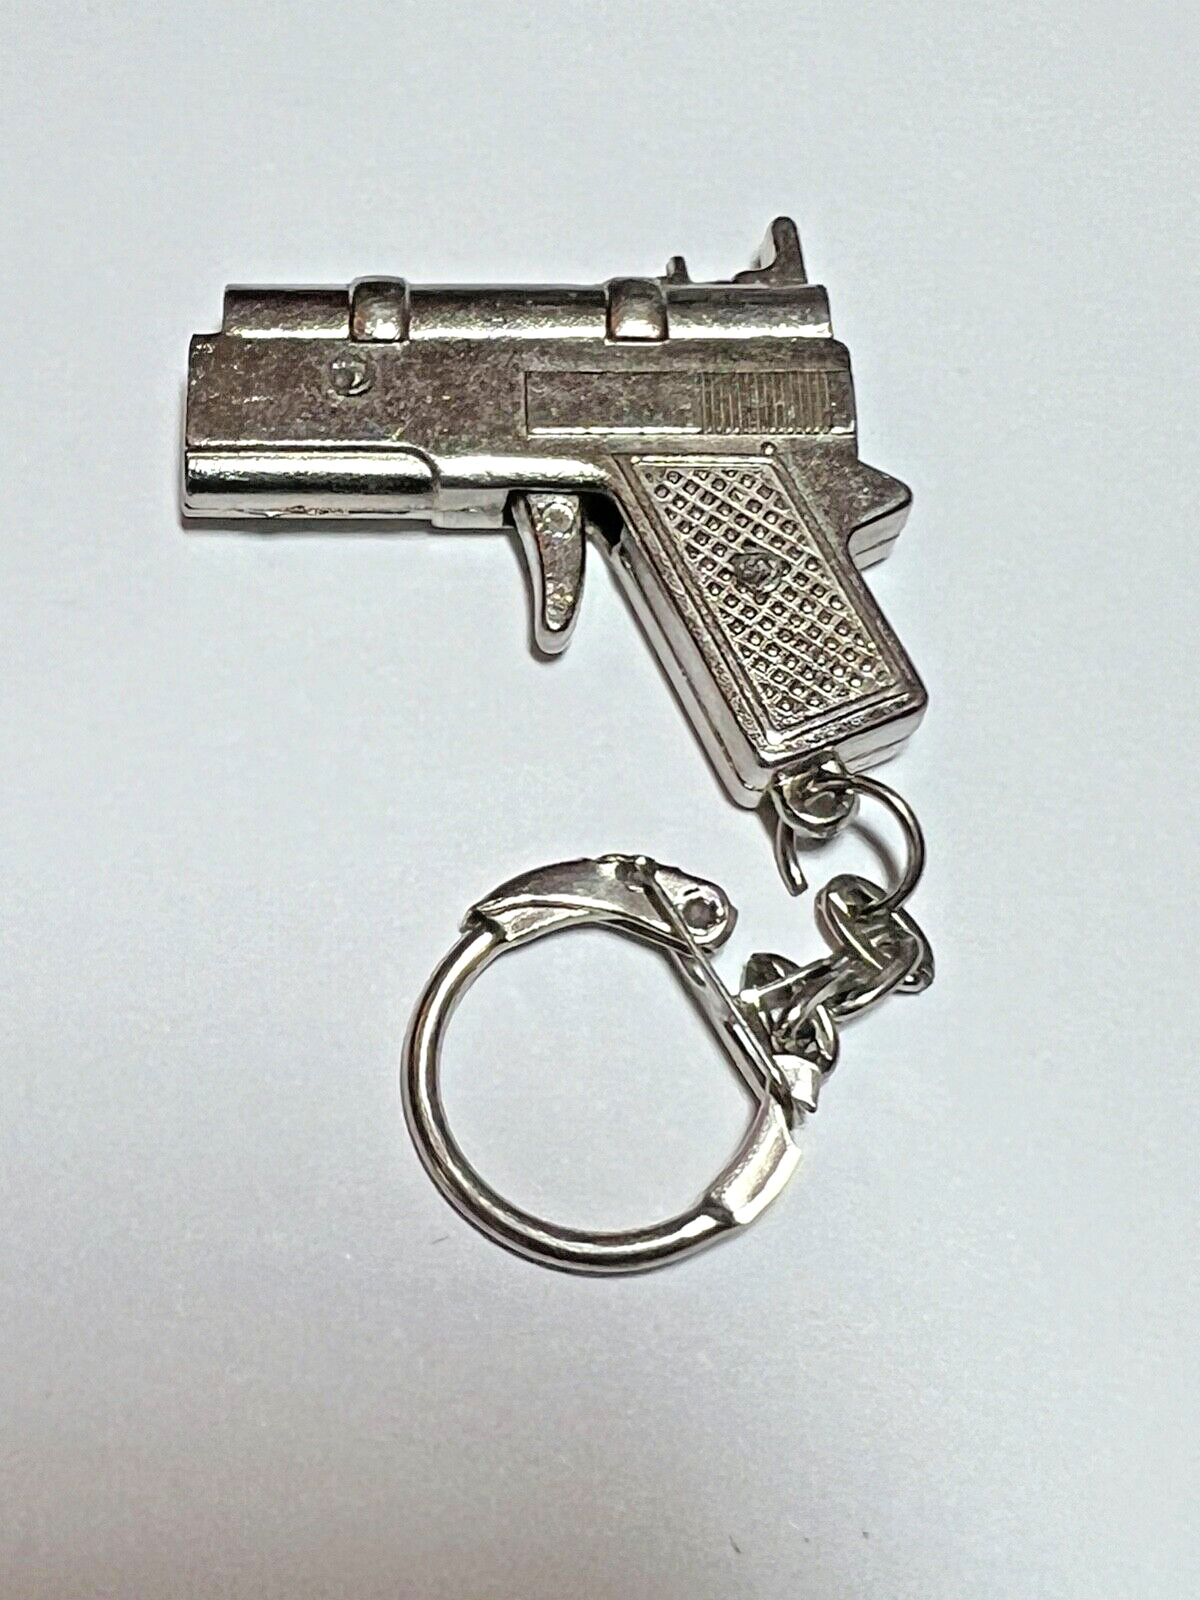 Keychain Collectable Mini Weapon Replica - Gun Pistol Accessory